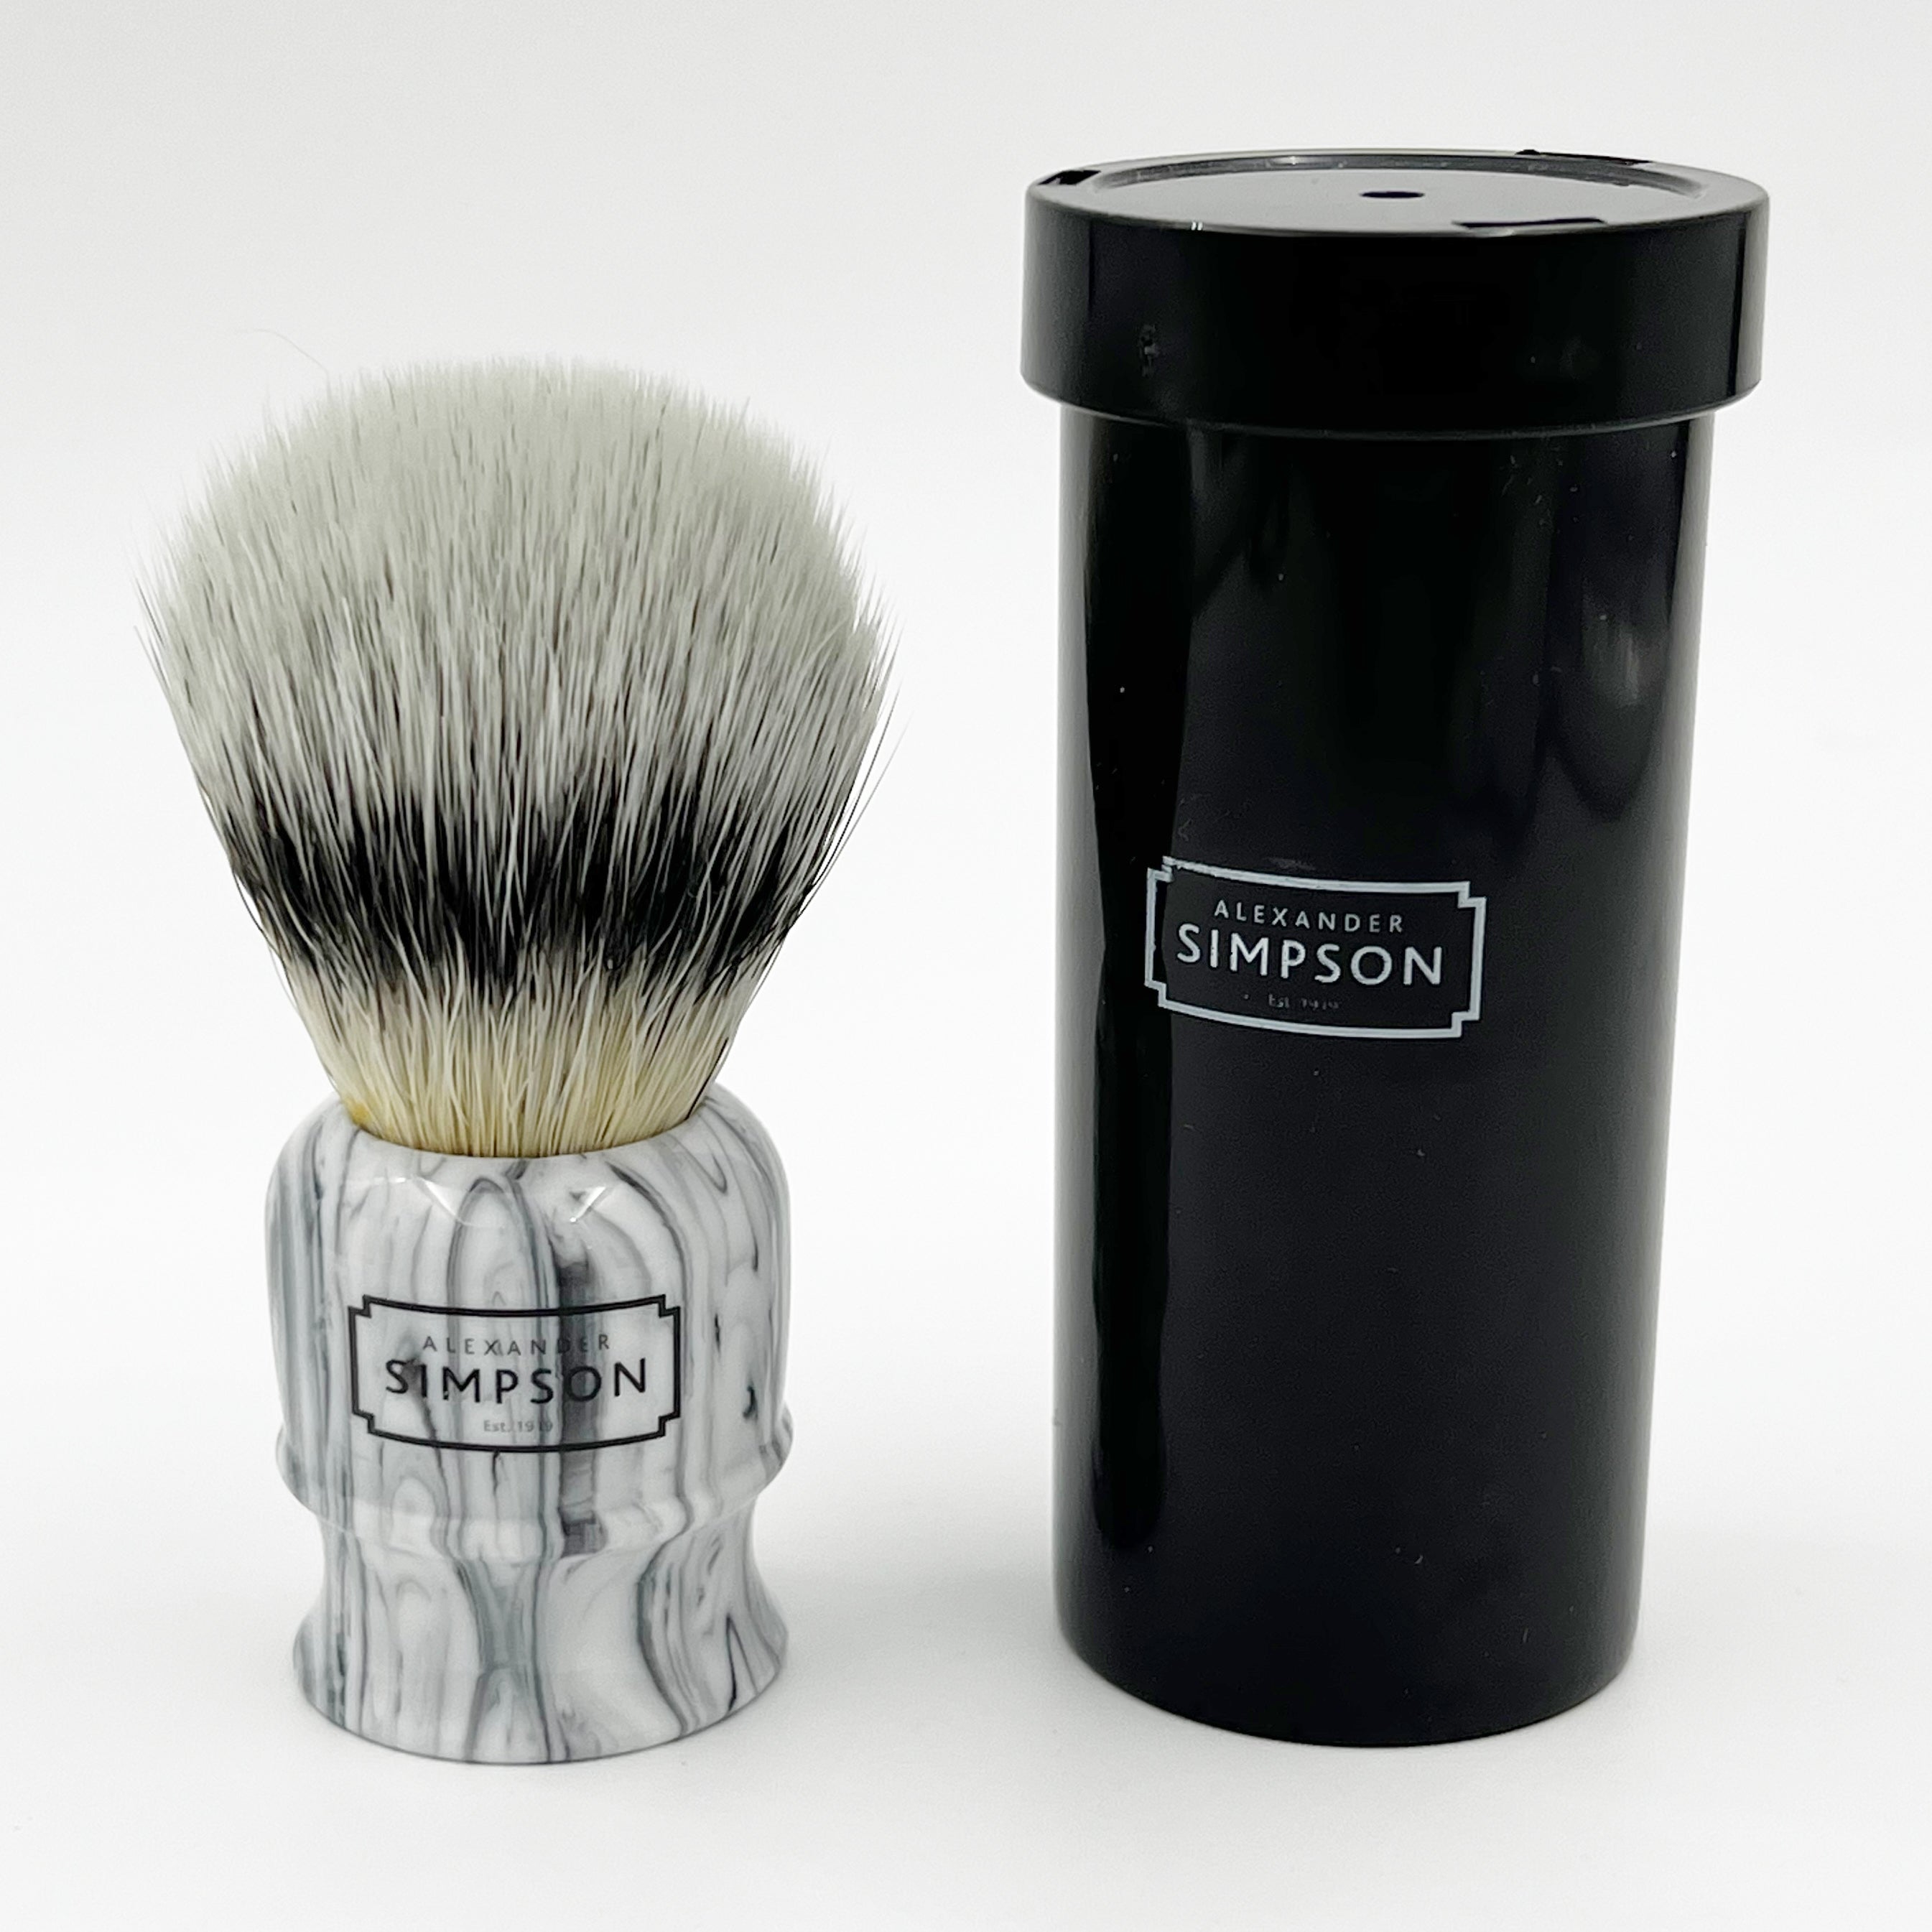 Simpson Highbury Travel Brush - Platinum Synthetic - Grey Italian Marble Shaving Brush